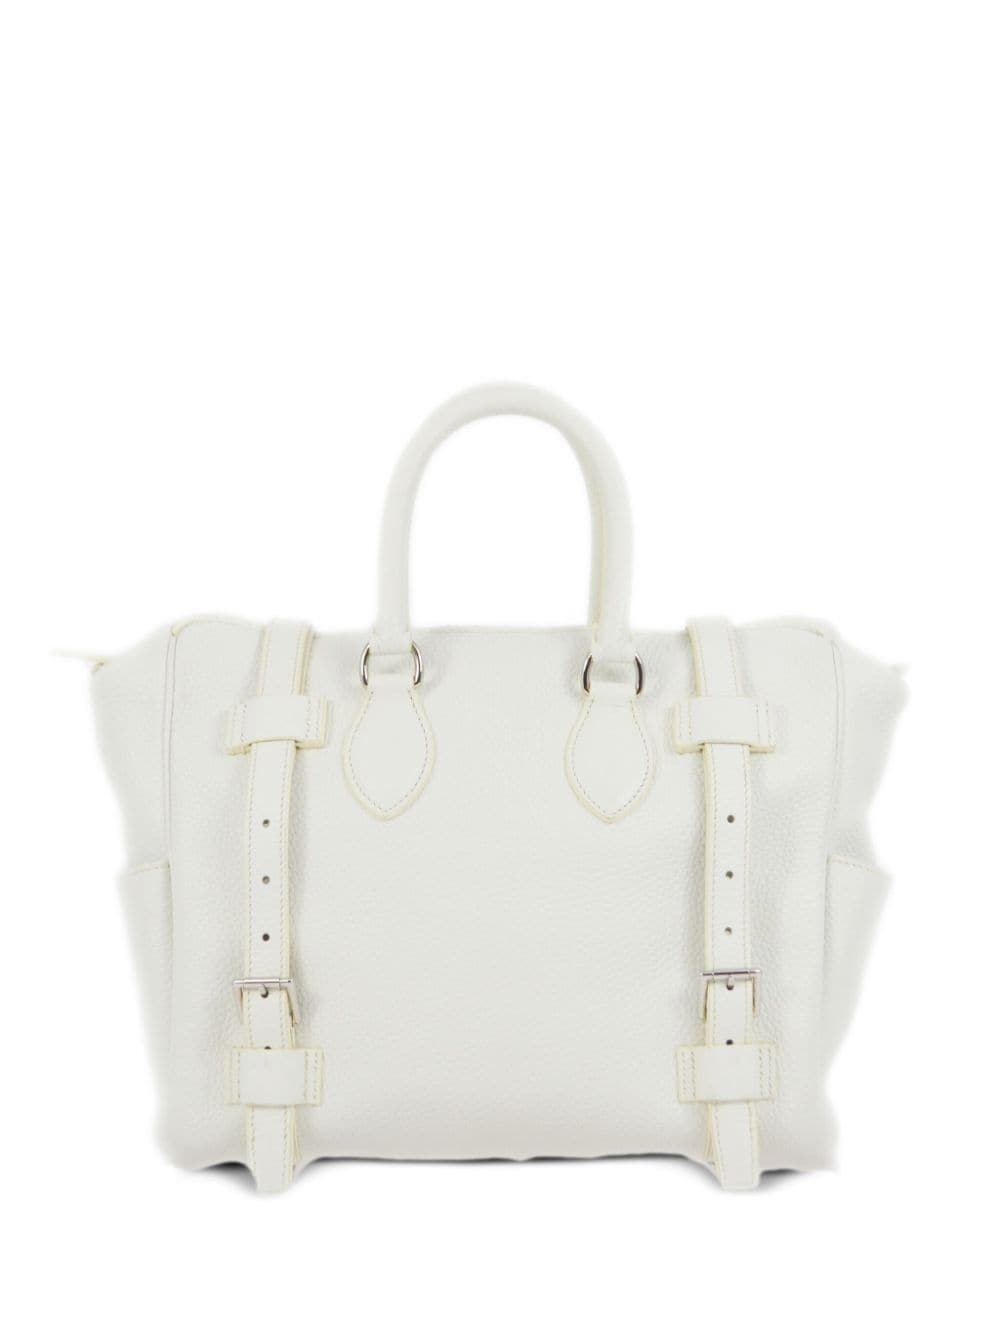 Hermès Pre-Owned 2009 Pursangle 31 handbag - White von Hermès Pre-Owned